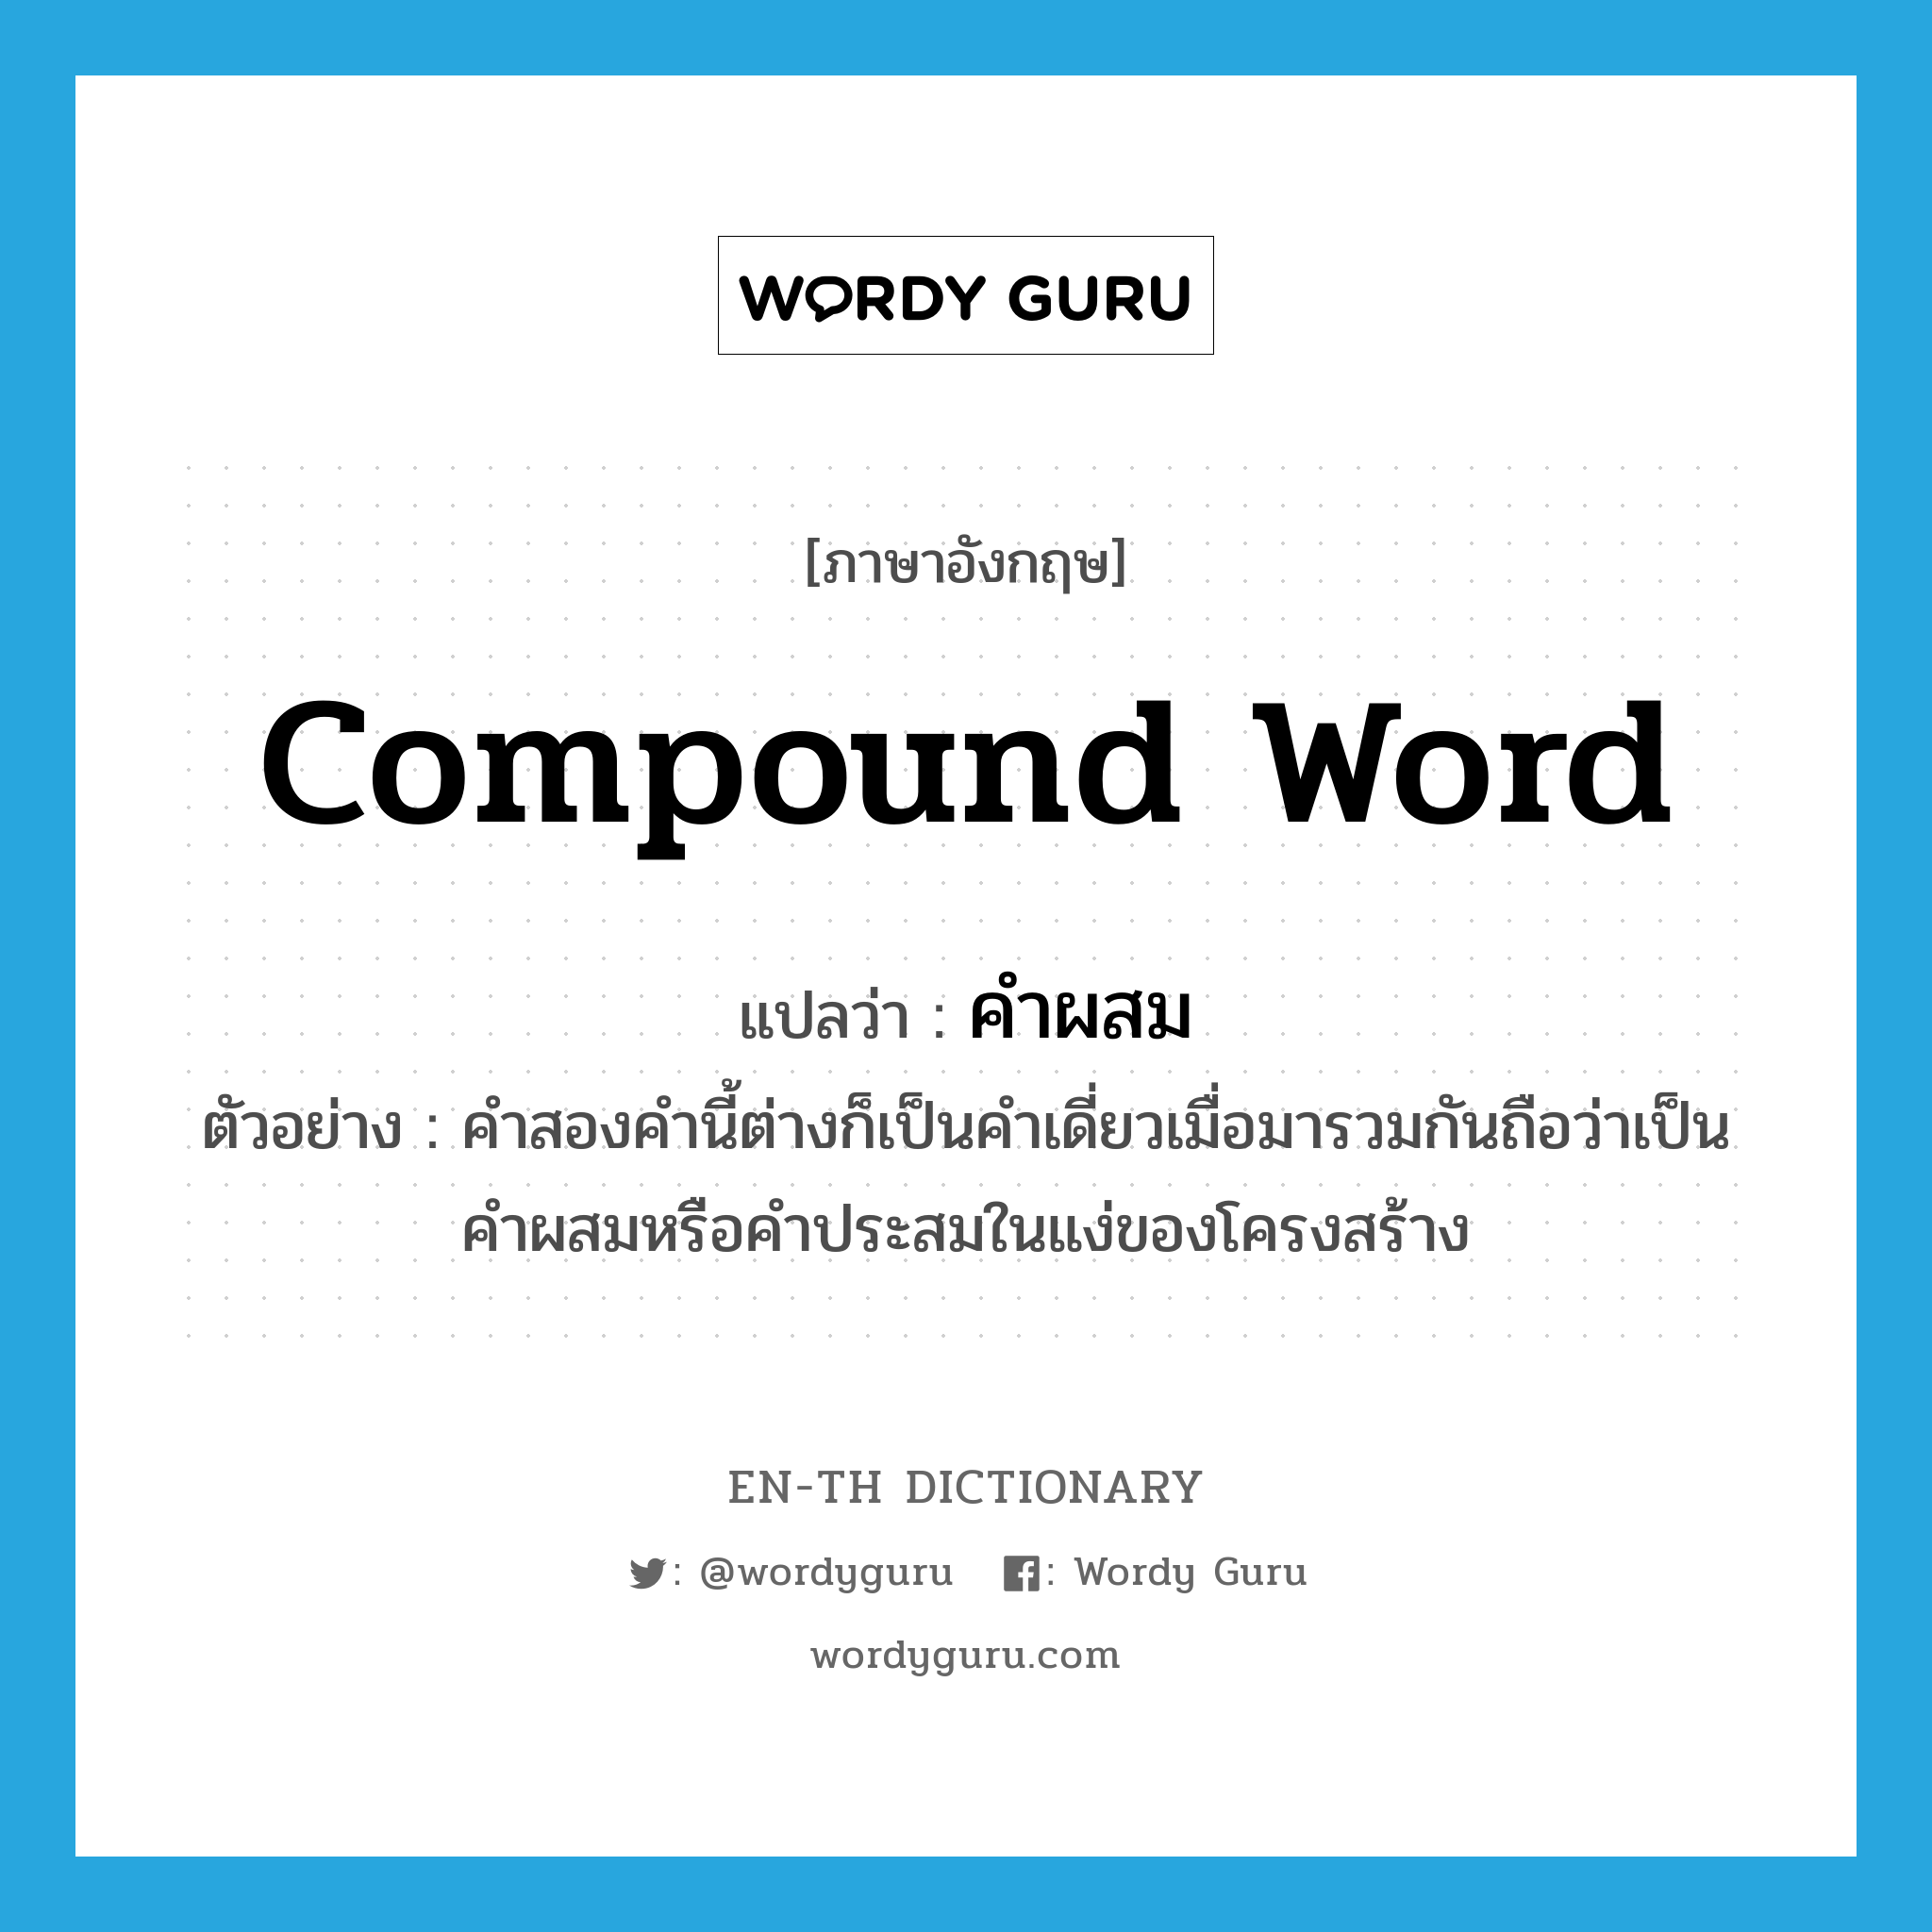 compound word แปลว่า?, คำศัพท์ภาษาอังกฤษ compound word แปลว่า คำผสม ประเภท N ตัวอย่าง คำสองคำนี้ต่างก็เป็นคำเดี่ยวเมื่อมารวมกันถือว่าเป็นคำผสมหรือคำประสมในแง่ของโครงสร้าง หมวด N